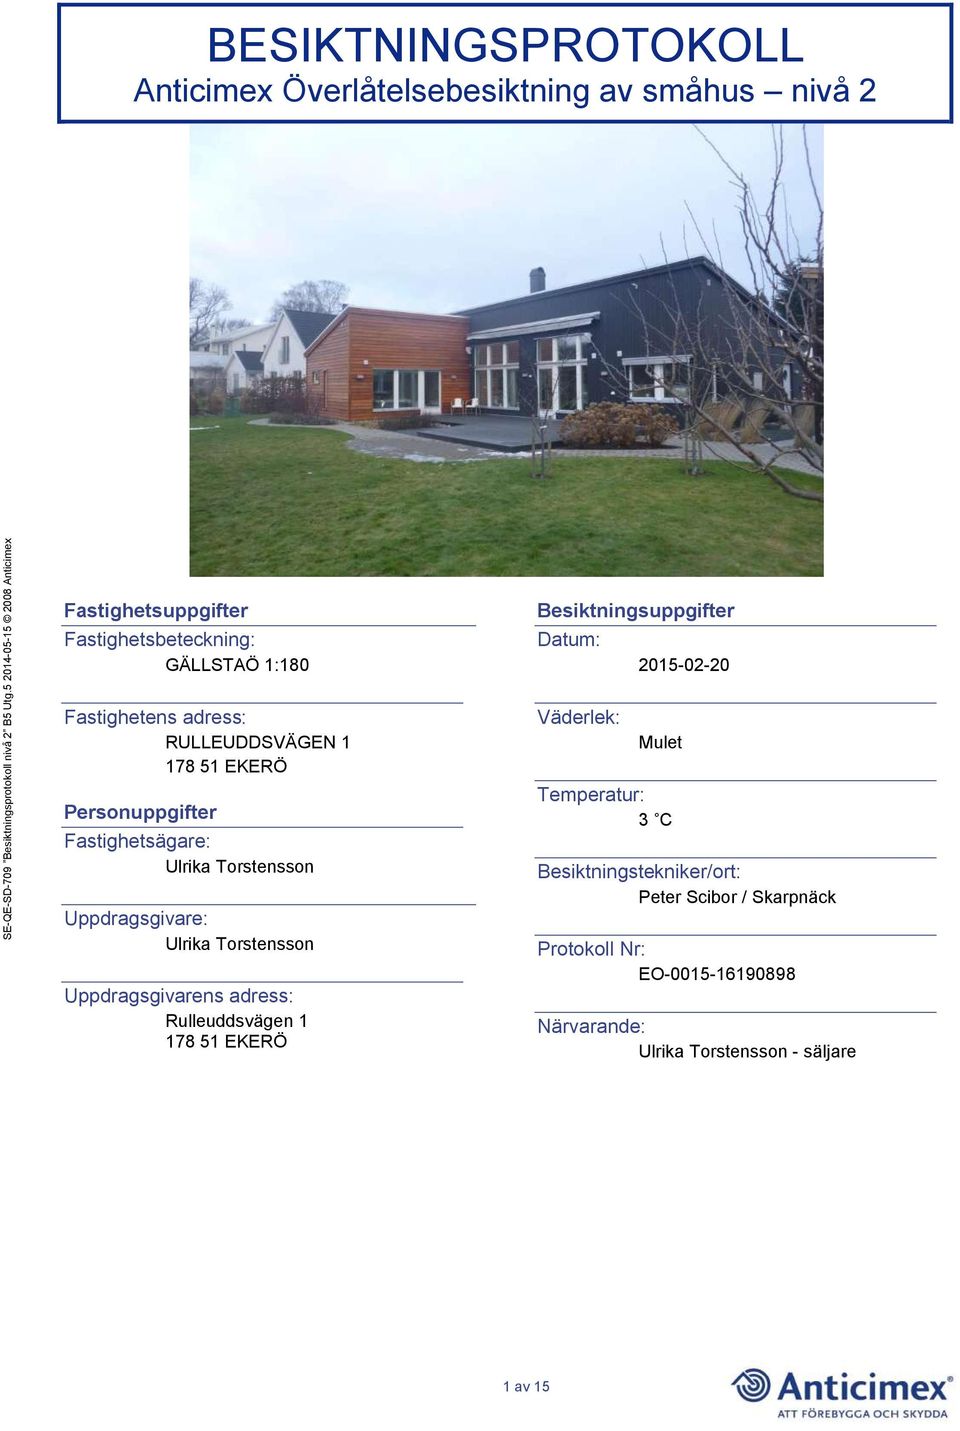 Torstensson Uppdragsgivarens adress: Rulleuddsvägen 1 178 51 EKERÖ Besiktningsuppgifter Datum: Väderlek: 2015-02-20 Mulet